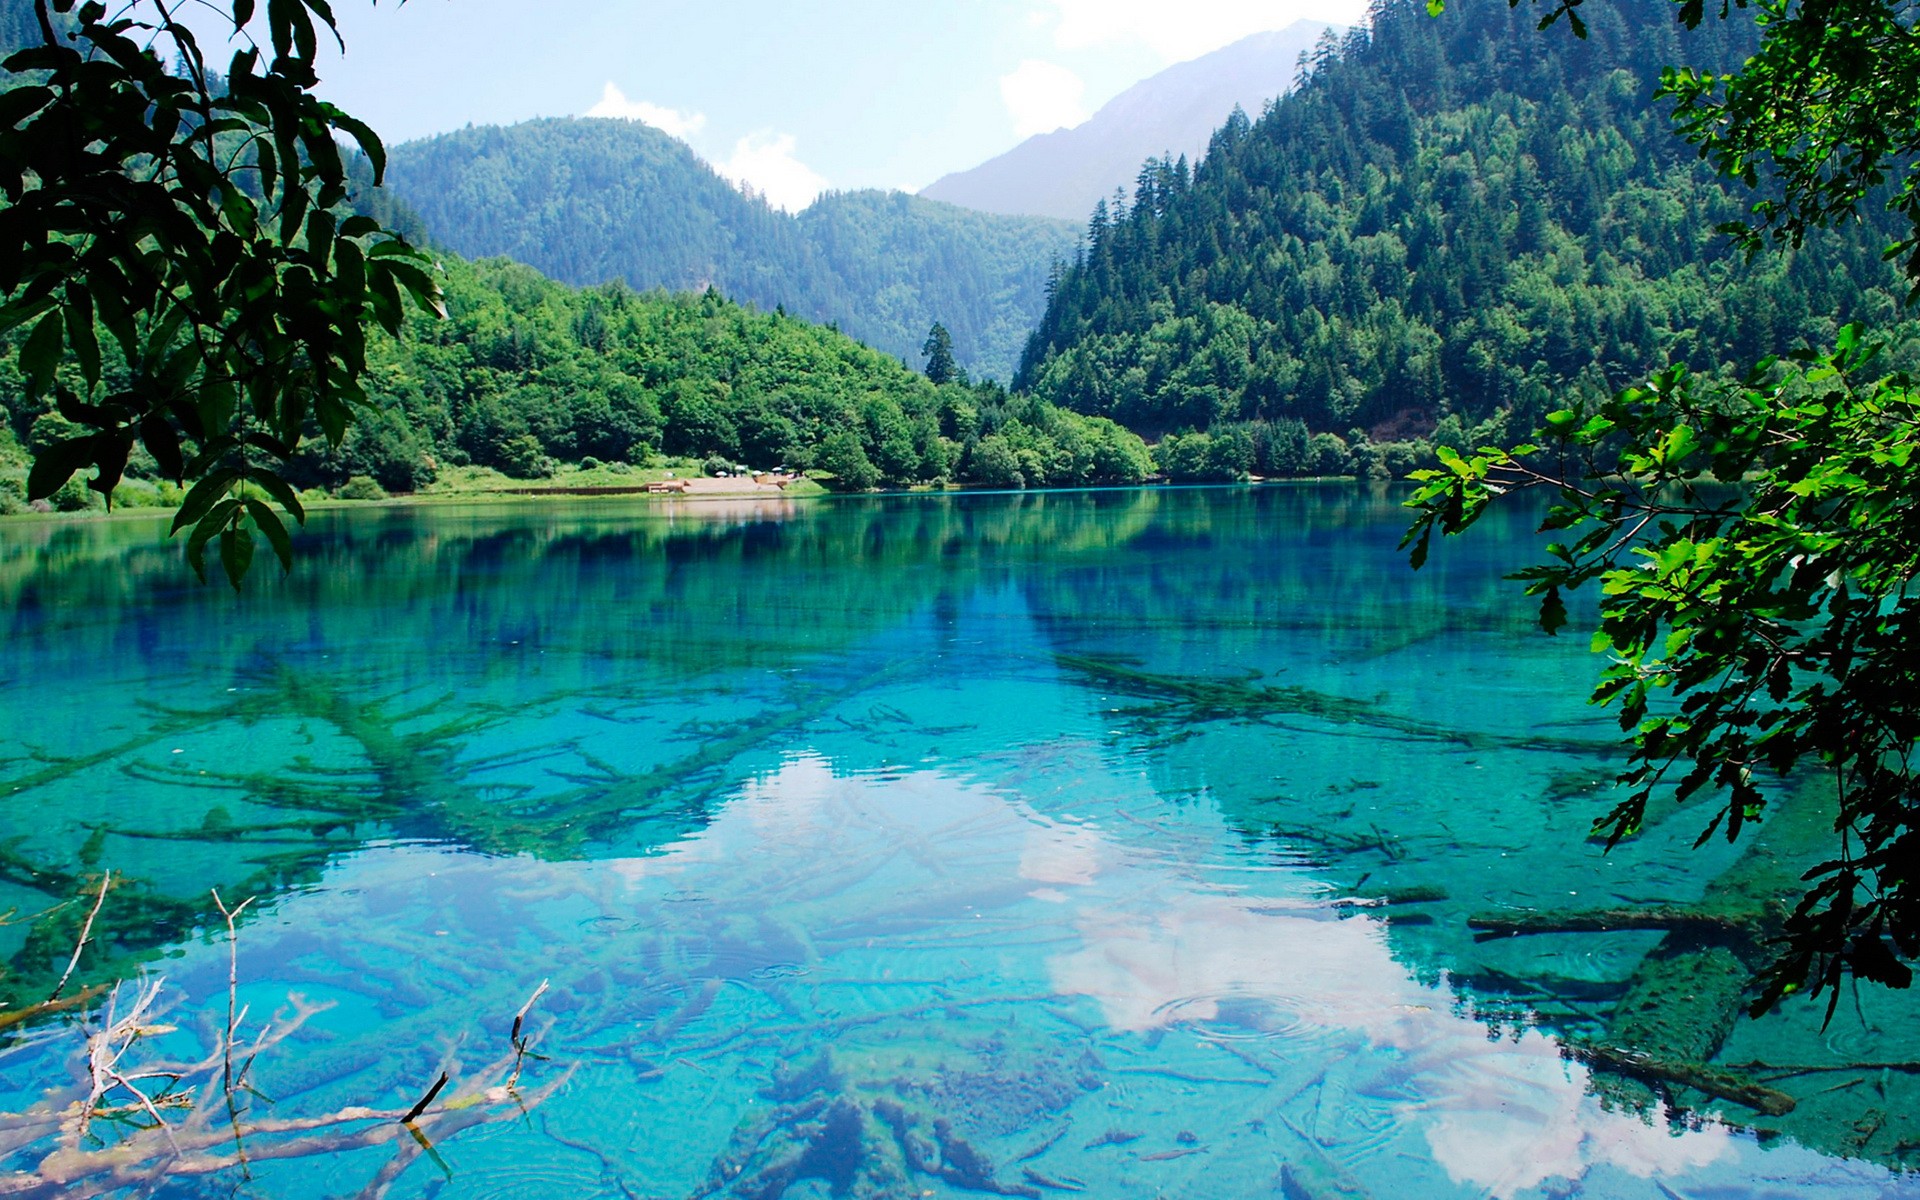 Озером называется природный водоем который. Озера Долины Цзючжайгоу. Национальный парк Цзючжайгоу («Долина девяти деревень»). Бирюзовое озеро, национальный парк Цзючжайгоу, Китай. Долина Цзючжайгоу (провинция Сычуань).